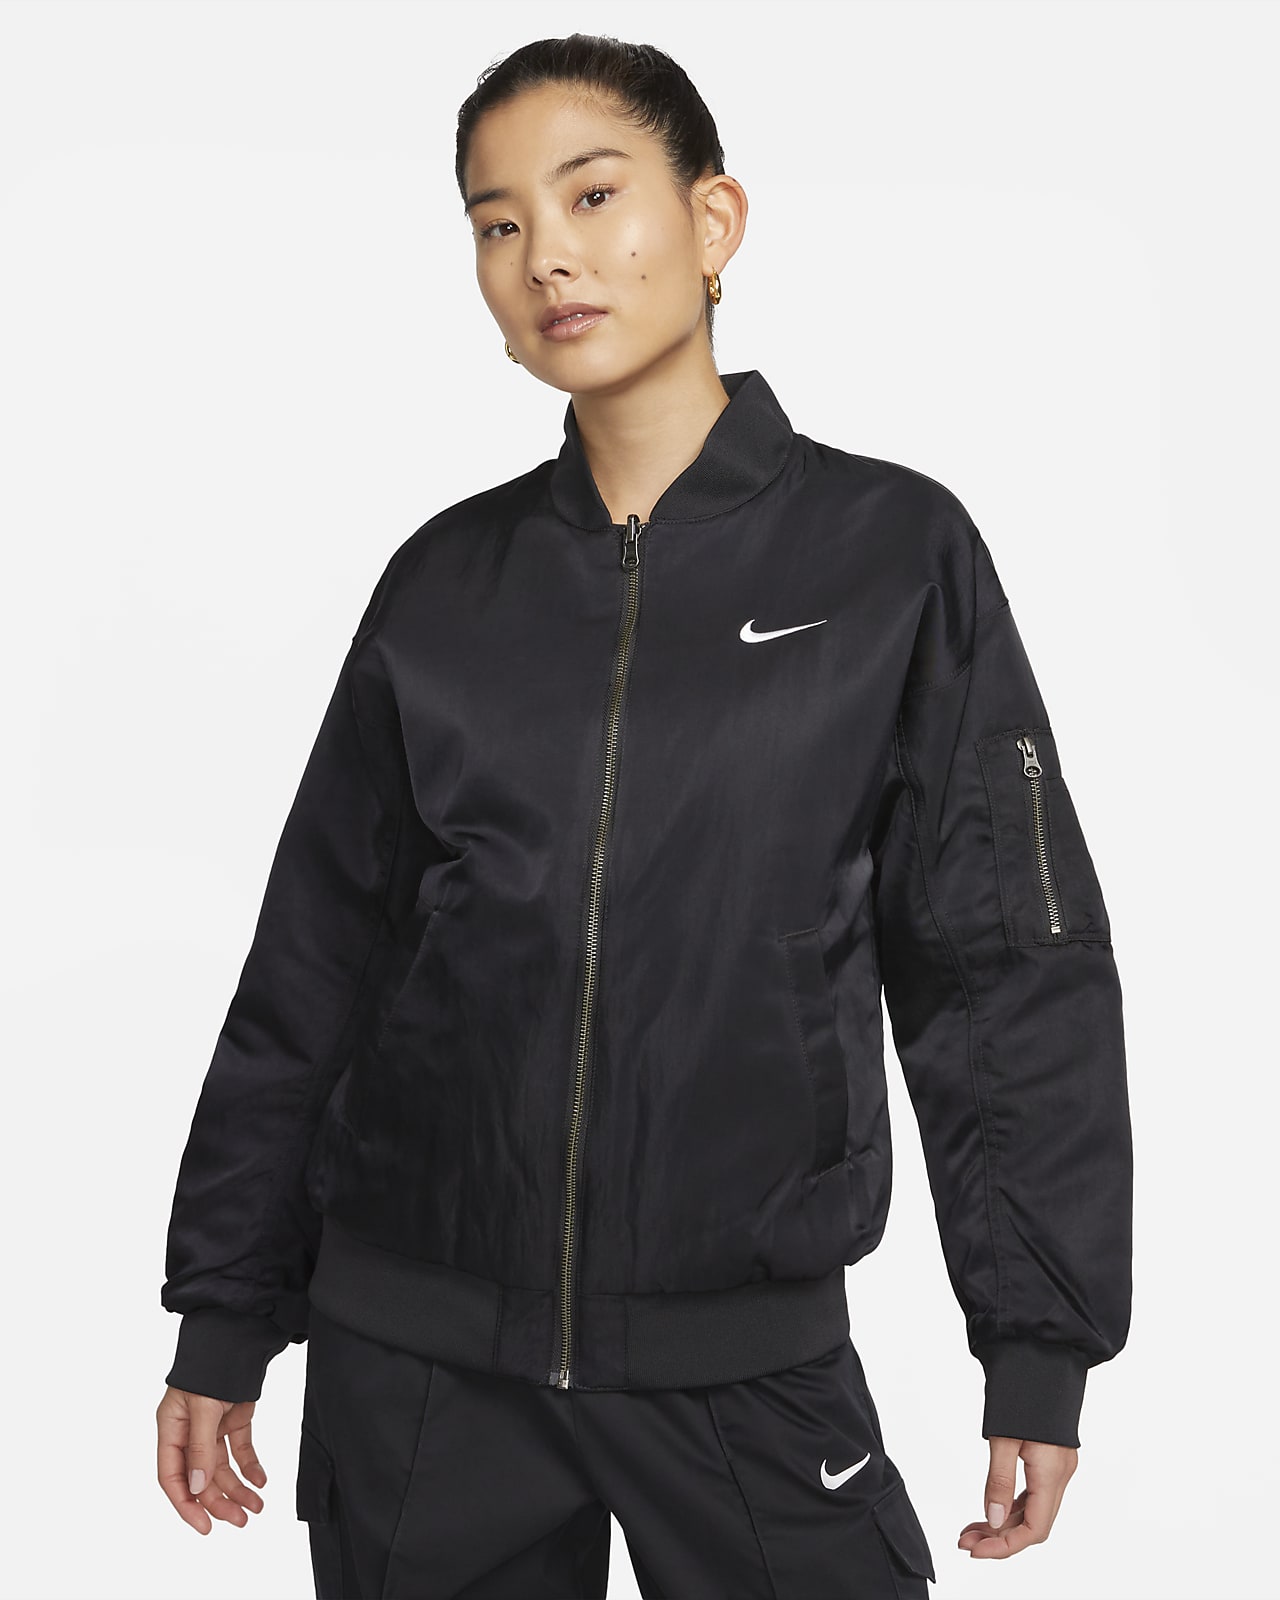 Sportswear Women's Jacket. Nike ID